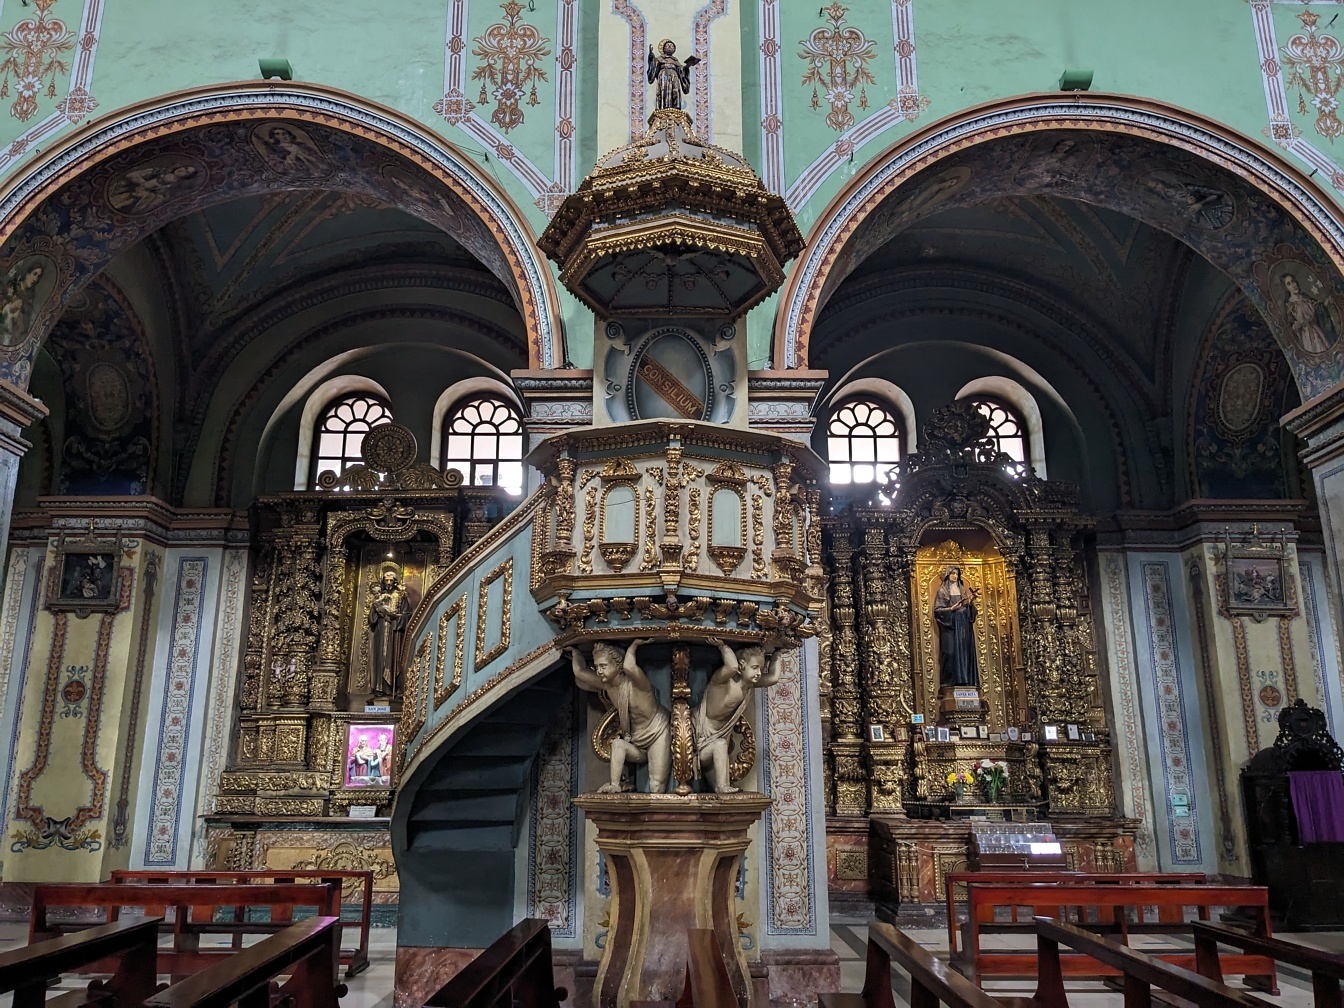 Nội thất nhà thờ Công giáo La Mã với cầu thang xoắn ốc trang trí công phu theo phong cách baroque